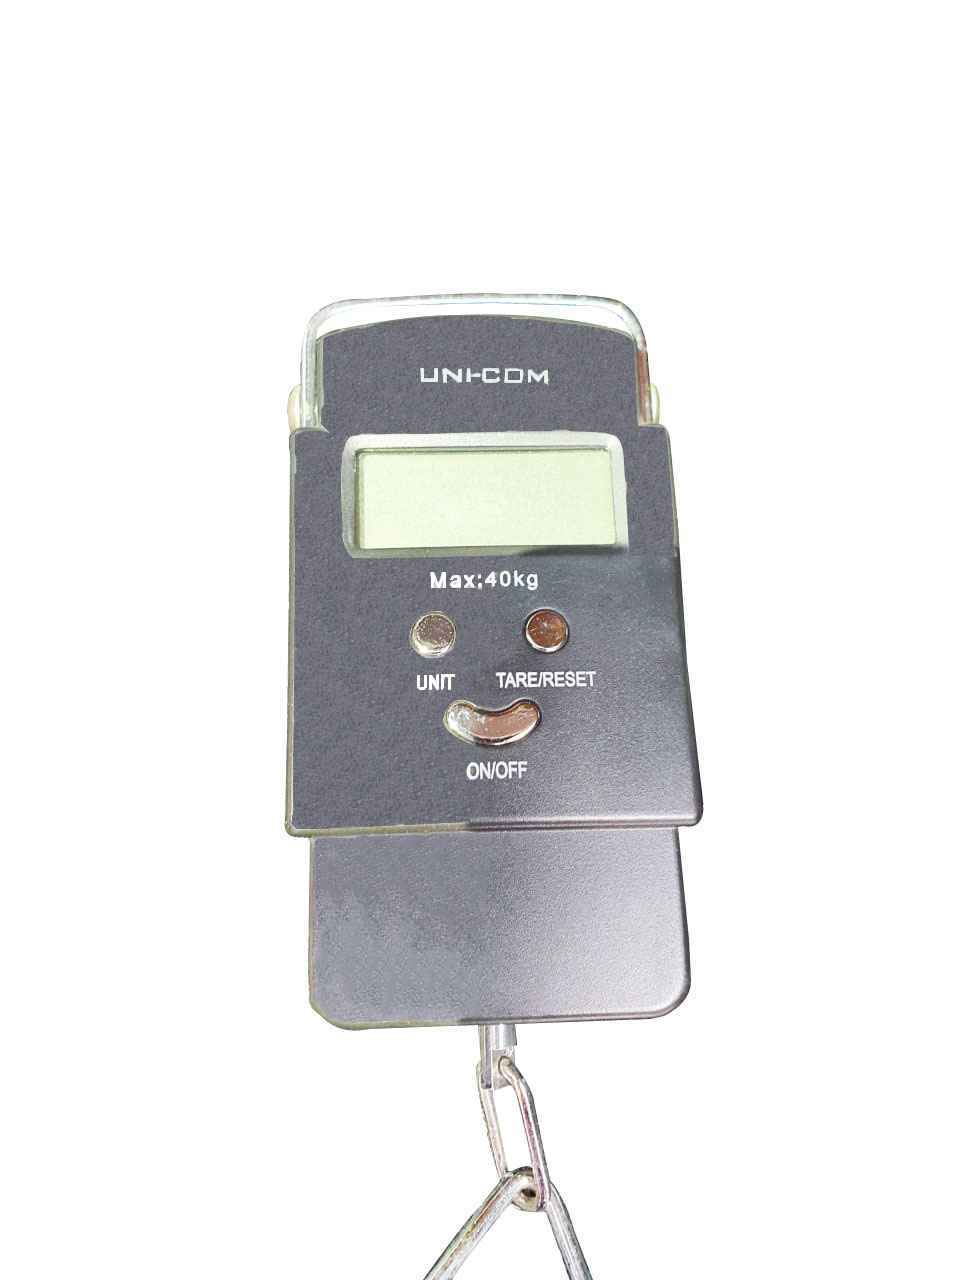 Uni-com Digital Luggage Scales - Silver